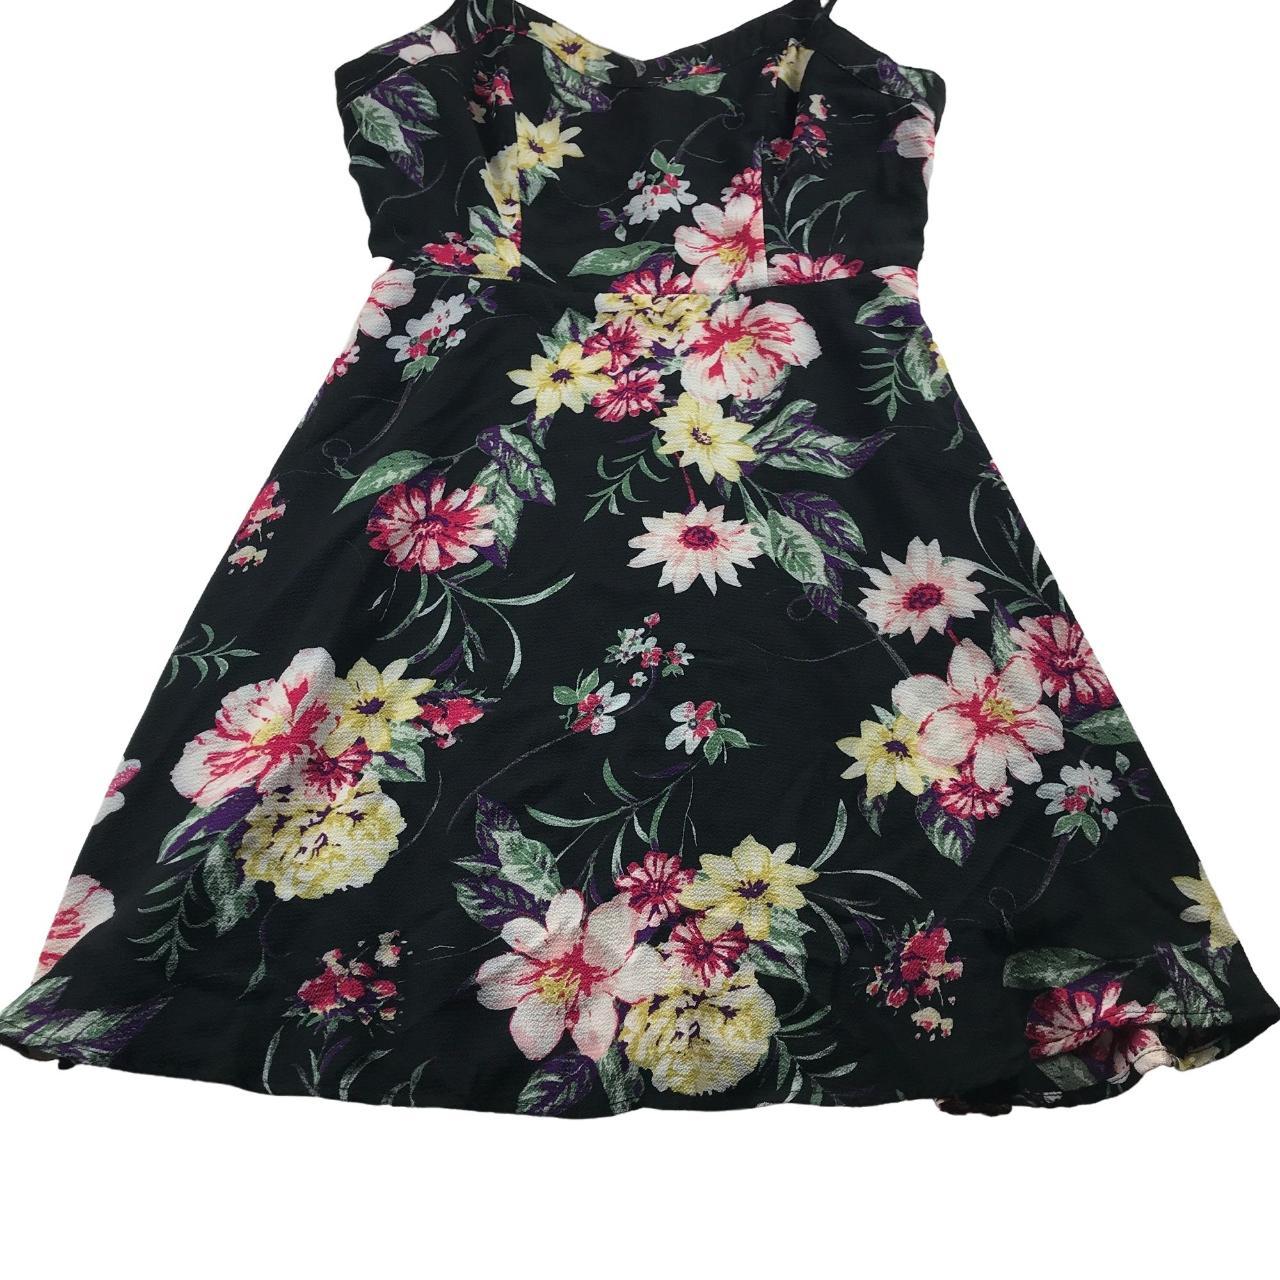 Entro Fit & Flare Mini Dress Size M Floral Zipper... - Depop